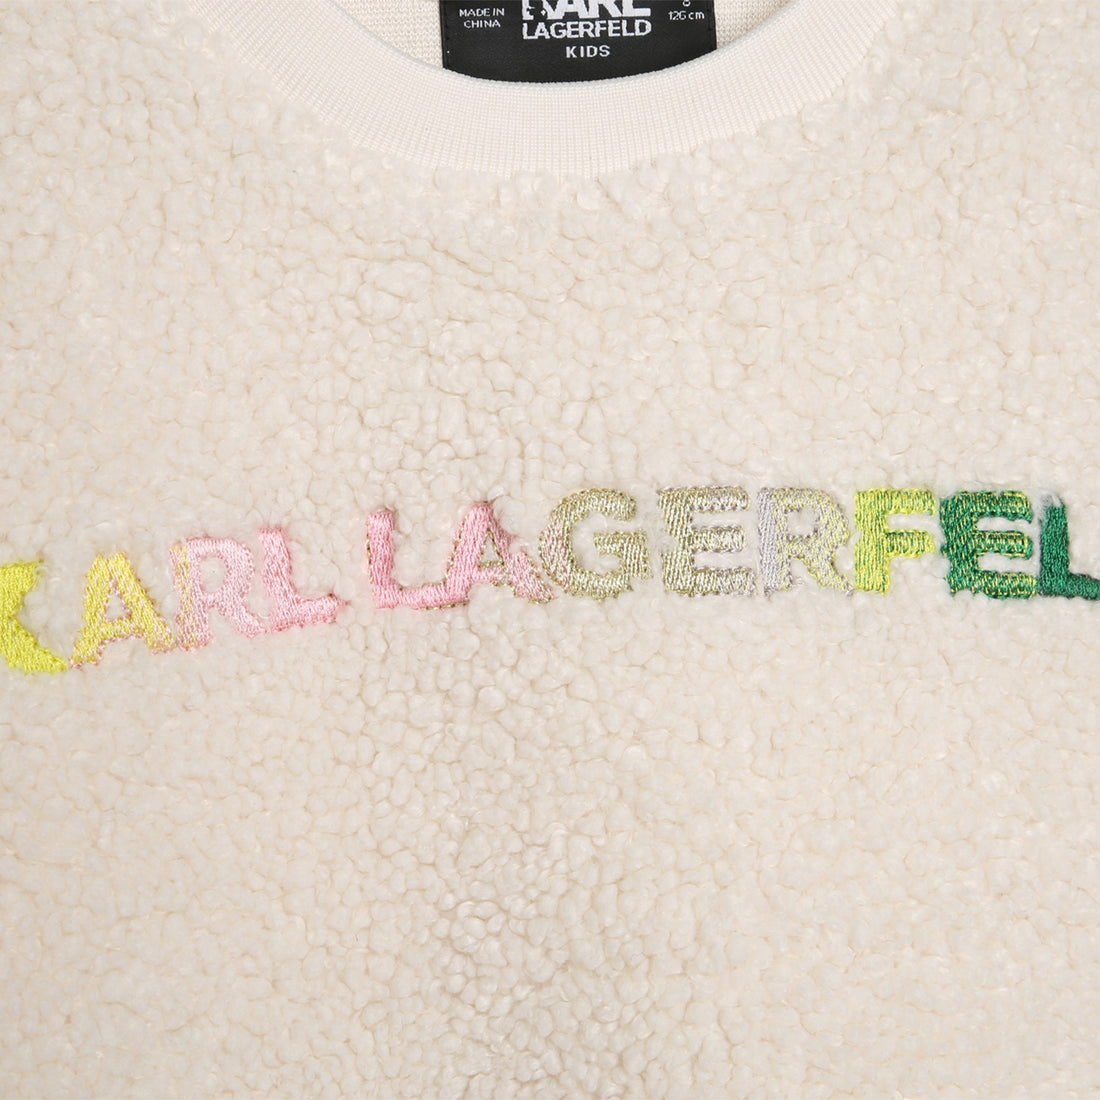 Karl Lagerfeld Kids Sweatshirt Style: Z15460